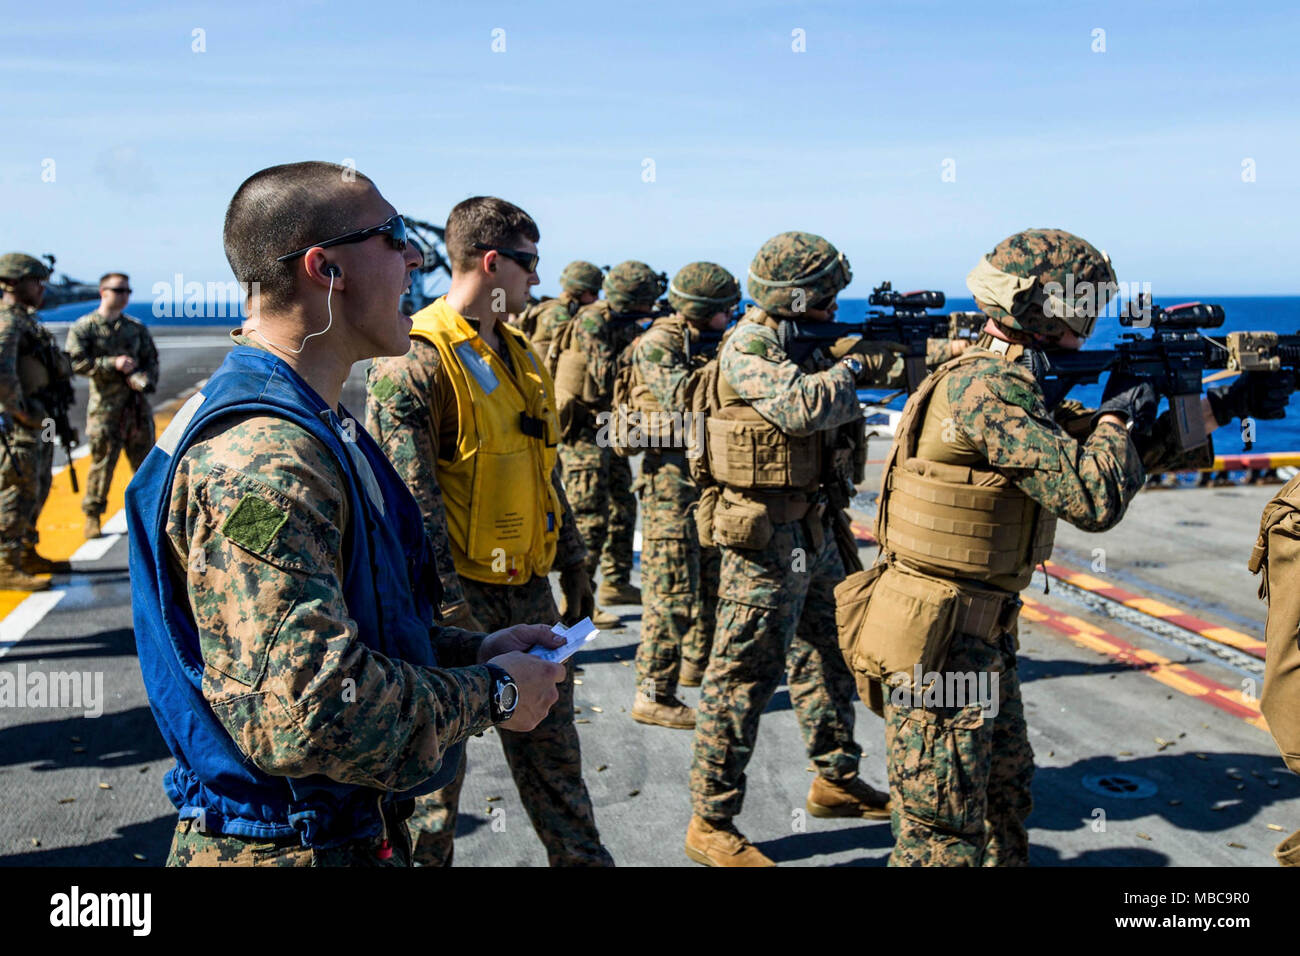 Ein US-Marine mit Bataillon Landung Team, 2.BATAILLON, 6 Marine Regiment (BLT 2/6), 26 Marine Expeditionary Unit (MEU), schreit Anweisungen in die Schusslinie während kurzer Reichweite schussübungen an Bord der USS Iwo Jima (LHD 7), Feb 16, 2018. Die 26. MEU ist die Teilnahme an einem Einsatz auf See see- und friedenserhaltenden Maßnahmen sowie Verhalten pflegen Beziehungen zu ausländischen Armeen durch gemeinsame Übungen. (U.S. Marine Corps Stockfoto